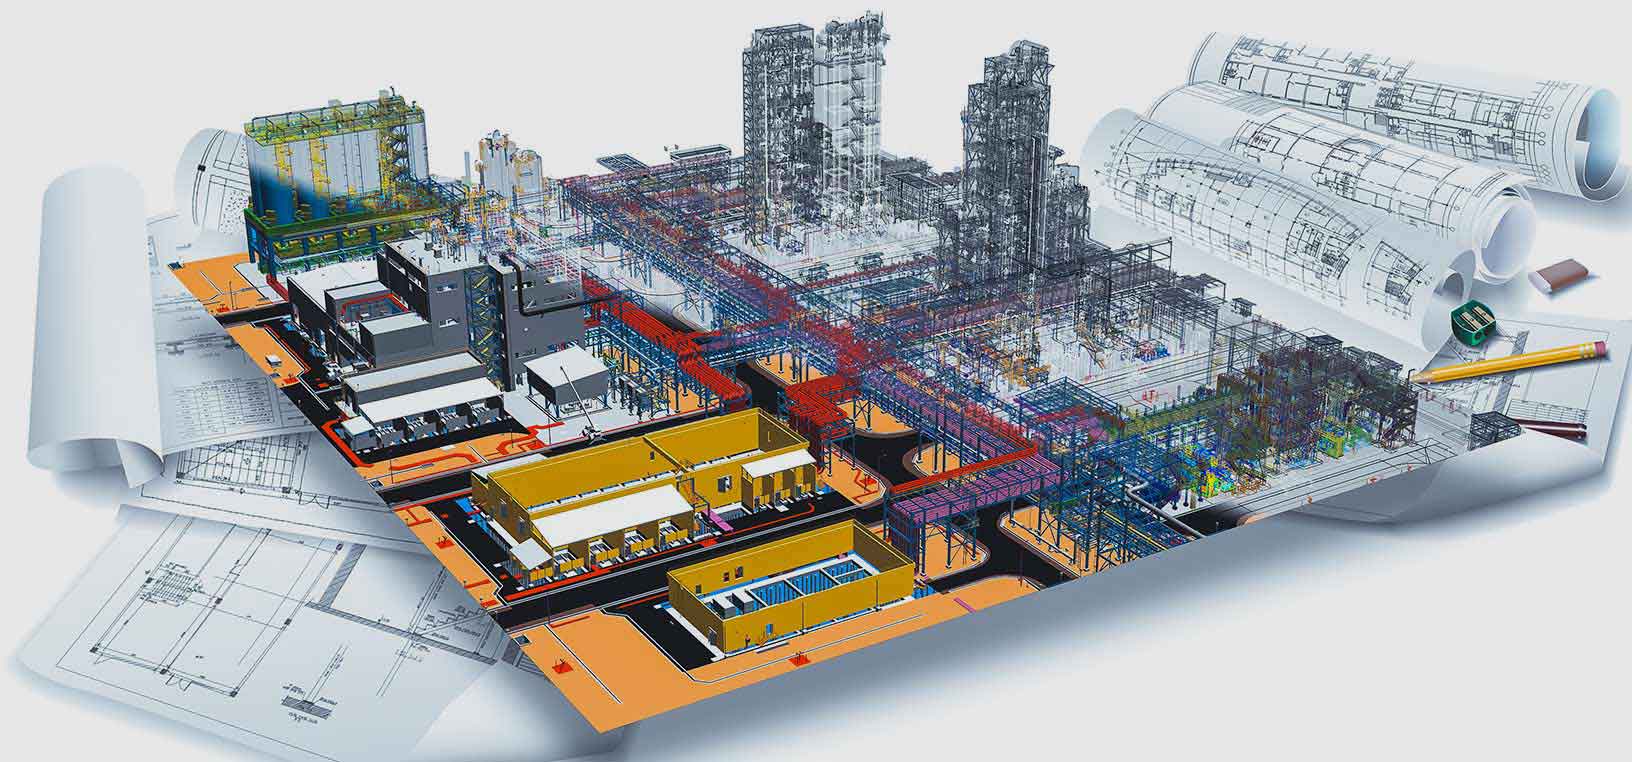 Imagem renderizada em 3D que retrata as diferentes fases do ciclo de vida da construção de uma fábrica, desde o desenho inicial em preto e branco até o modelo completo usando o software da Hexagon